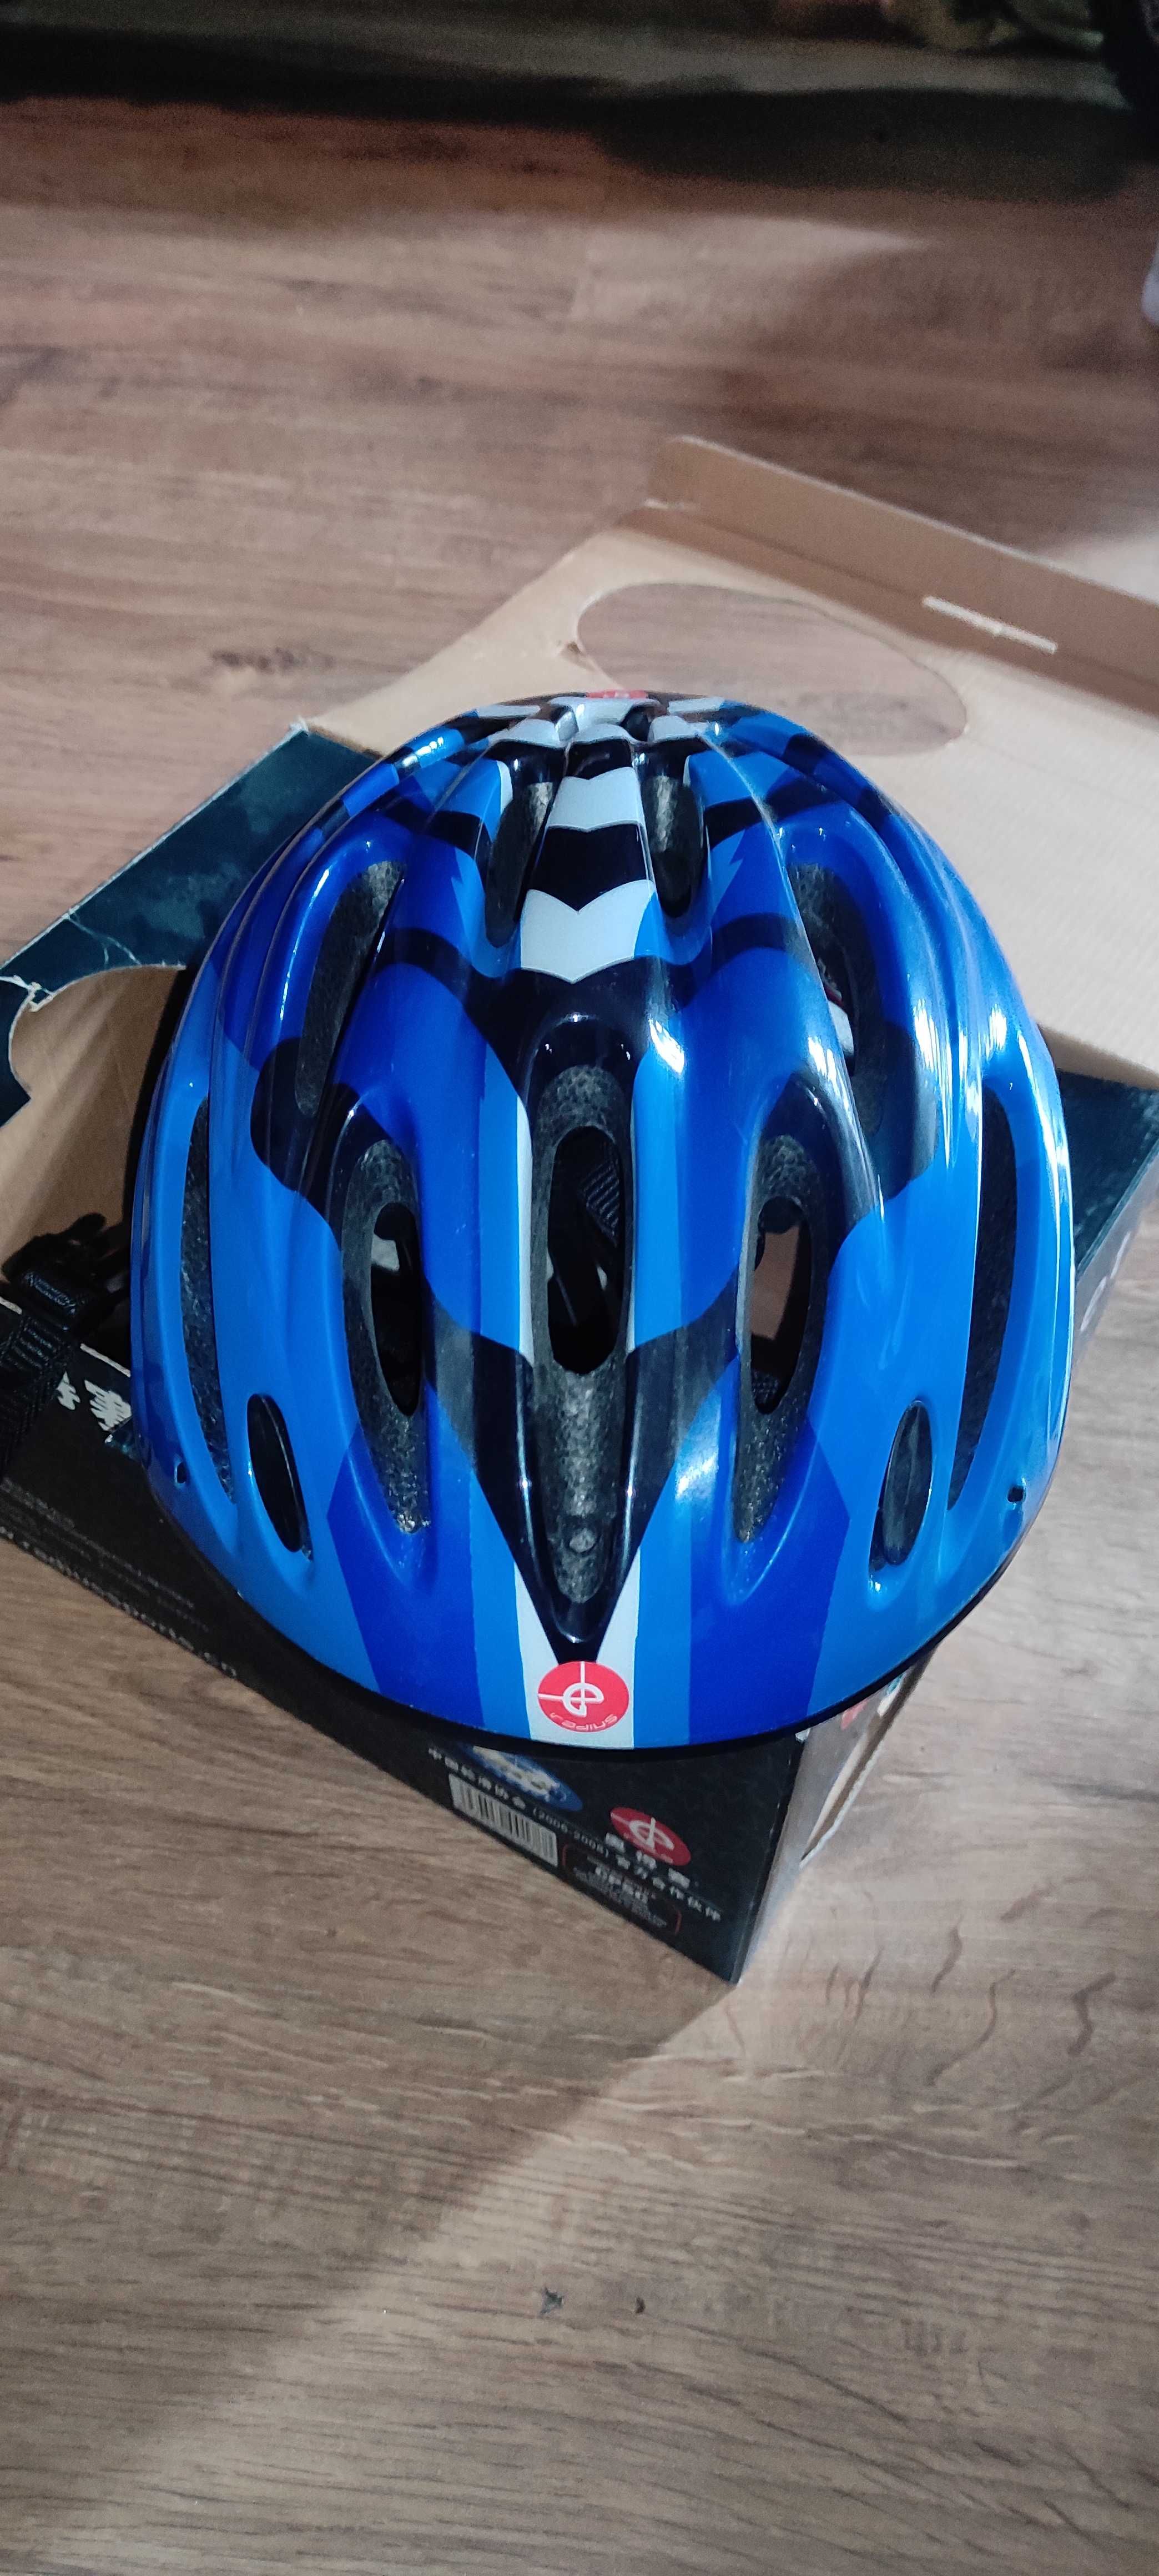 Детский шлем для роликов, велосипеда Helmet